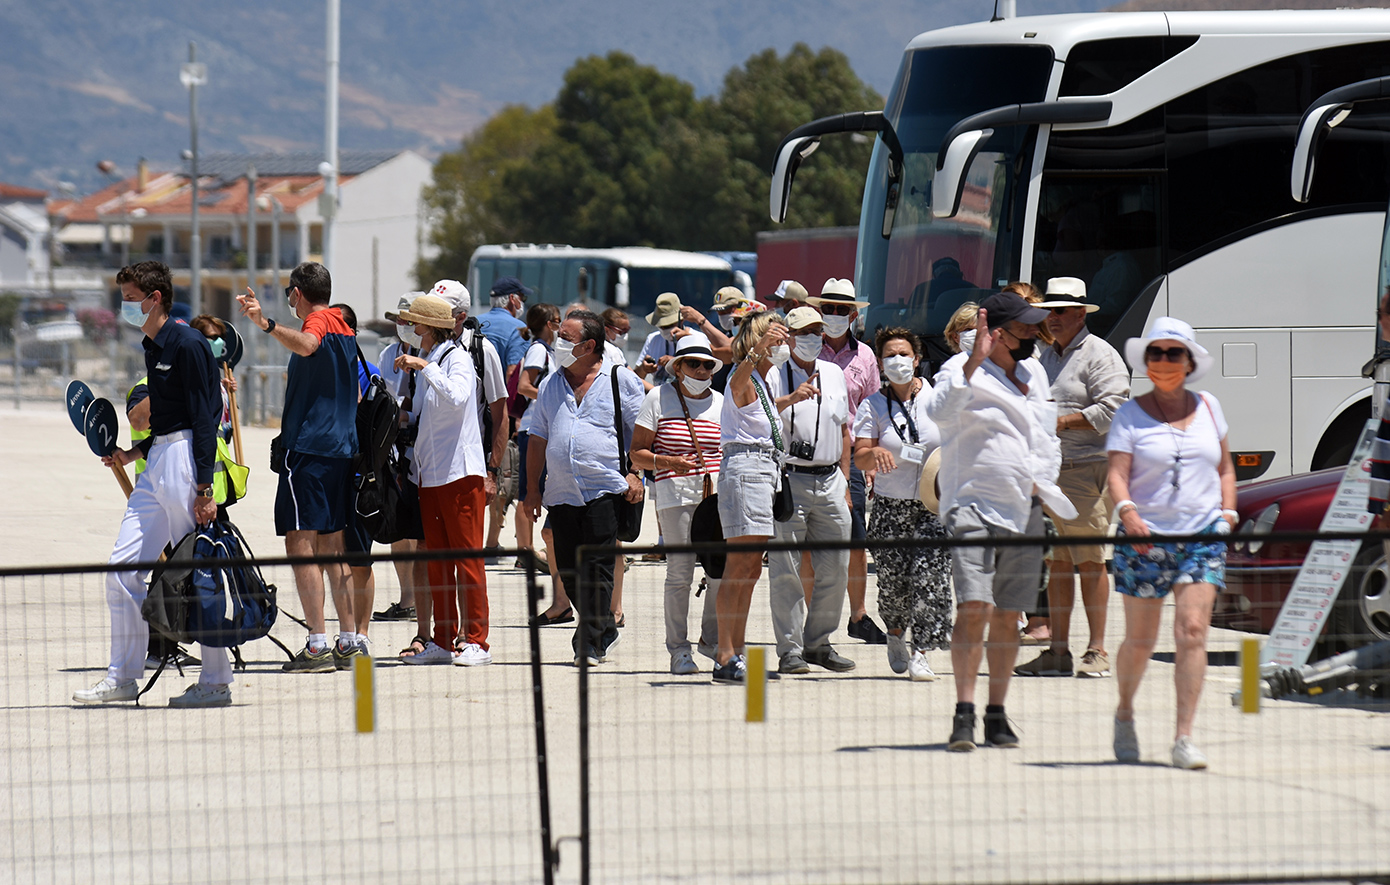 «Η Ελλάδα αποκτά μια σταθερή βάση τουριστικών ροών στα επίπεδα των 30 εκ. αφίξεων» τονίζει η αντιπρόεδρος των ξενοδόχων, Χ. Τετράδη